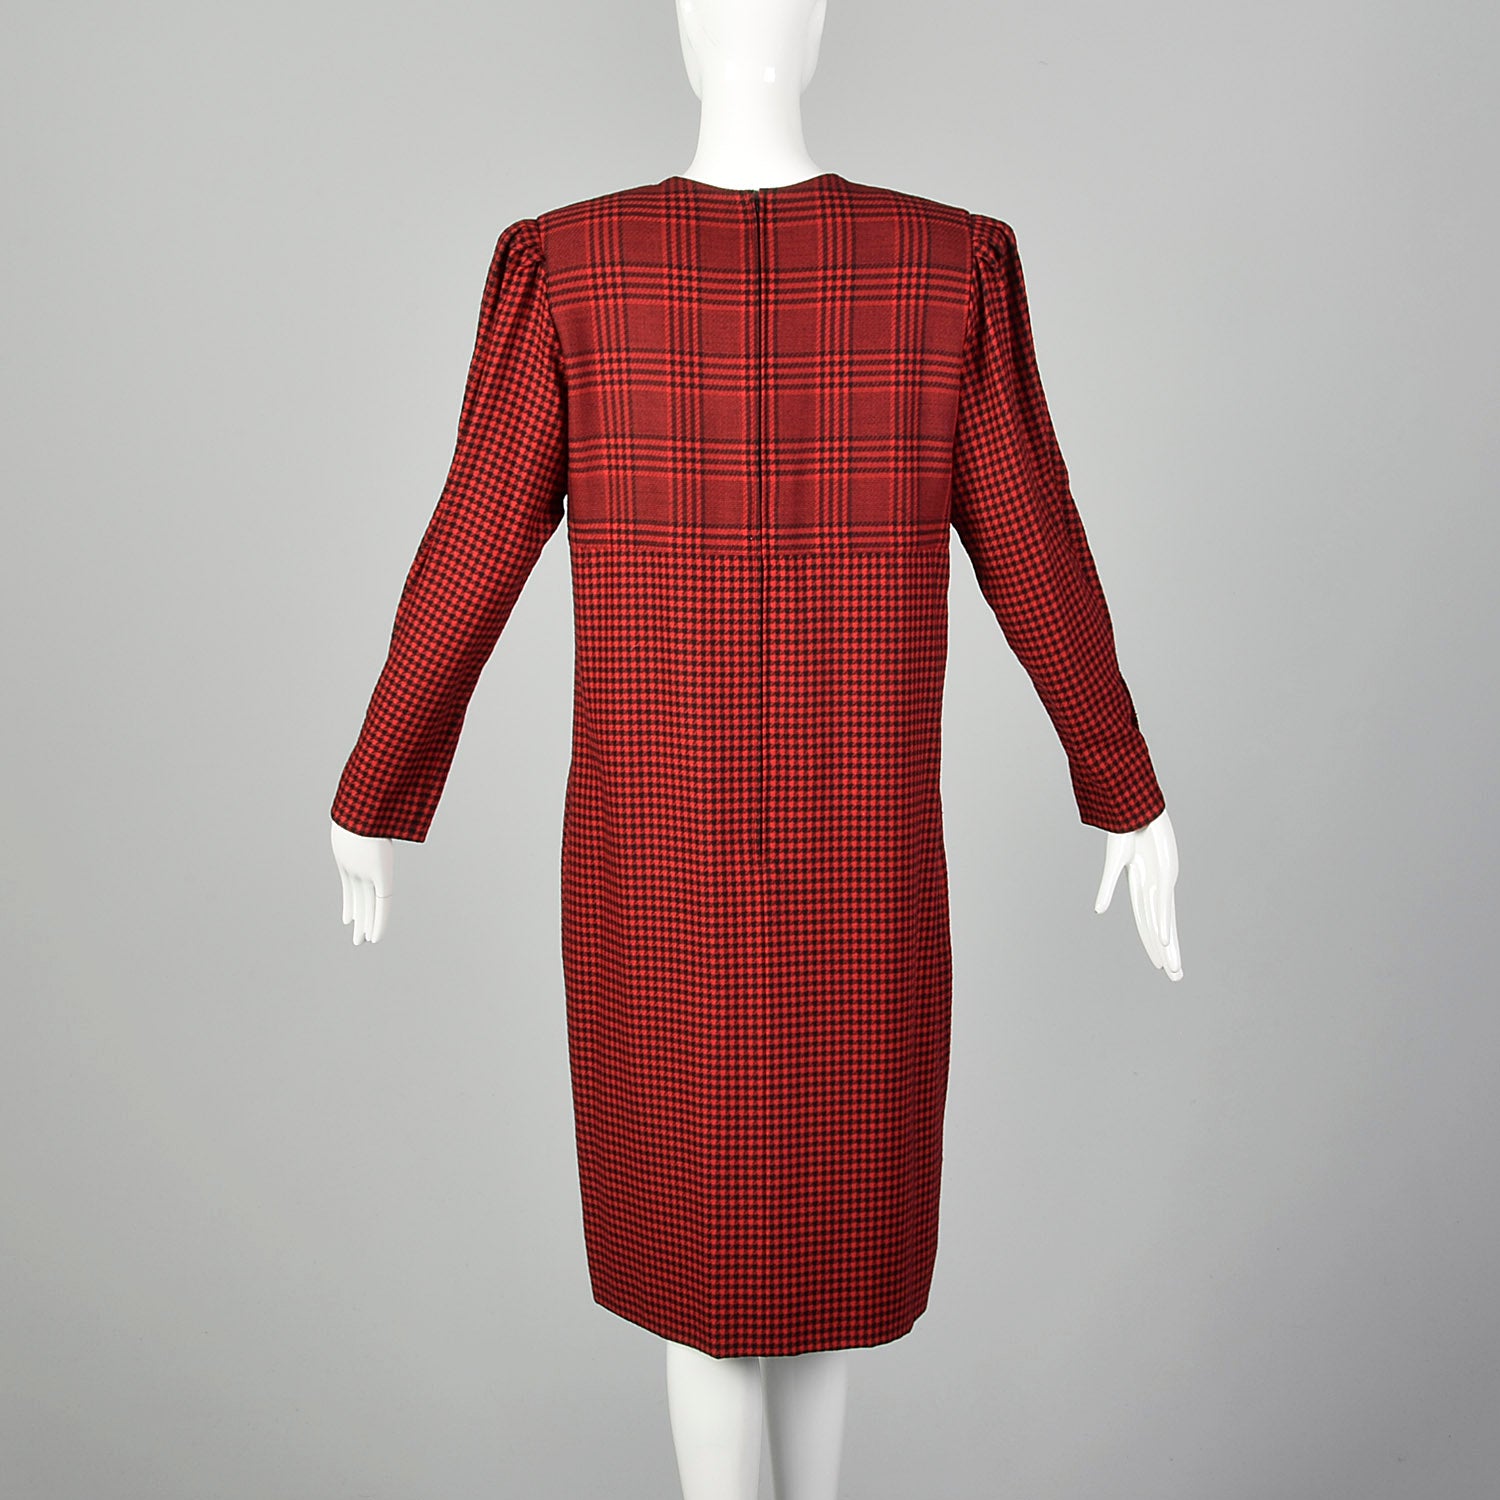 Medium-Large Adele Simpson Red Plaid 1980s Dress